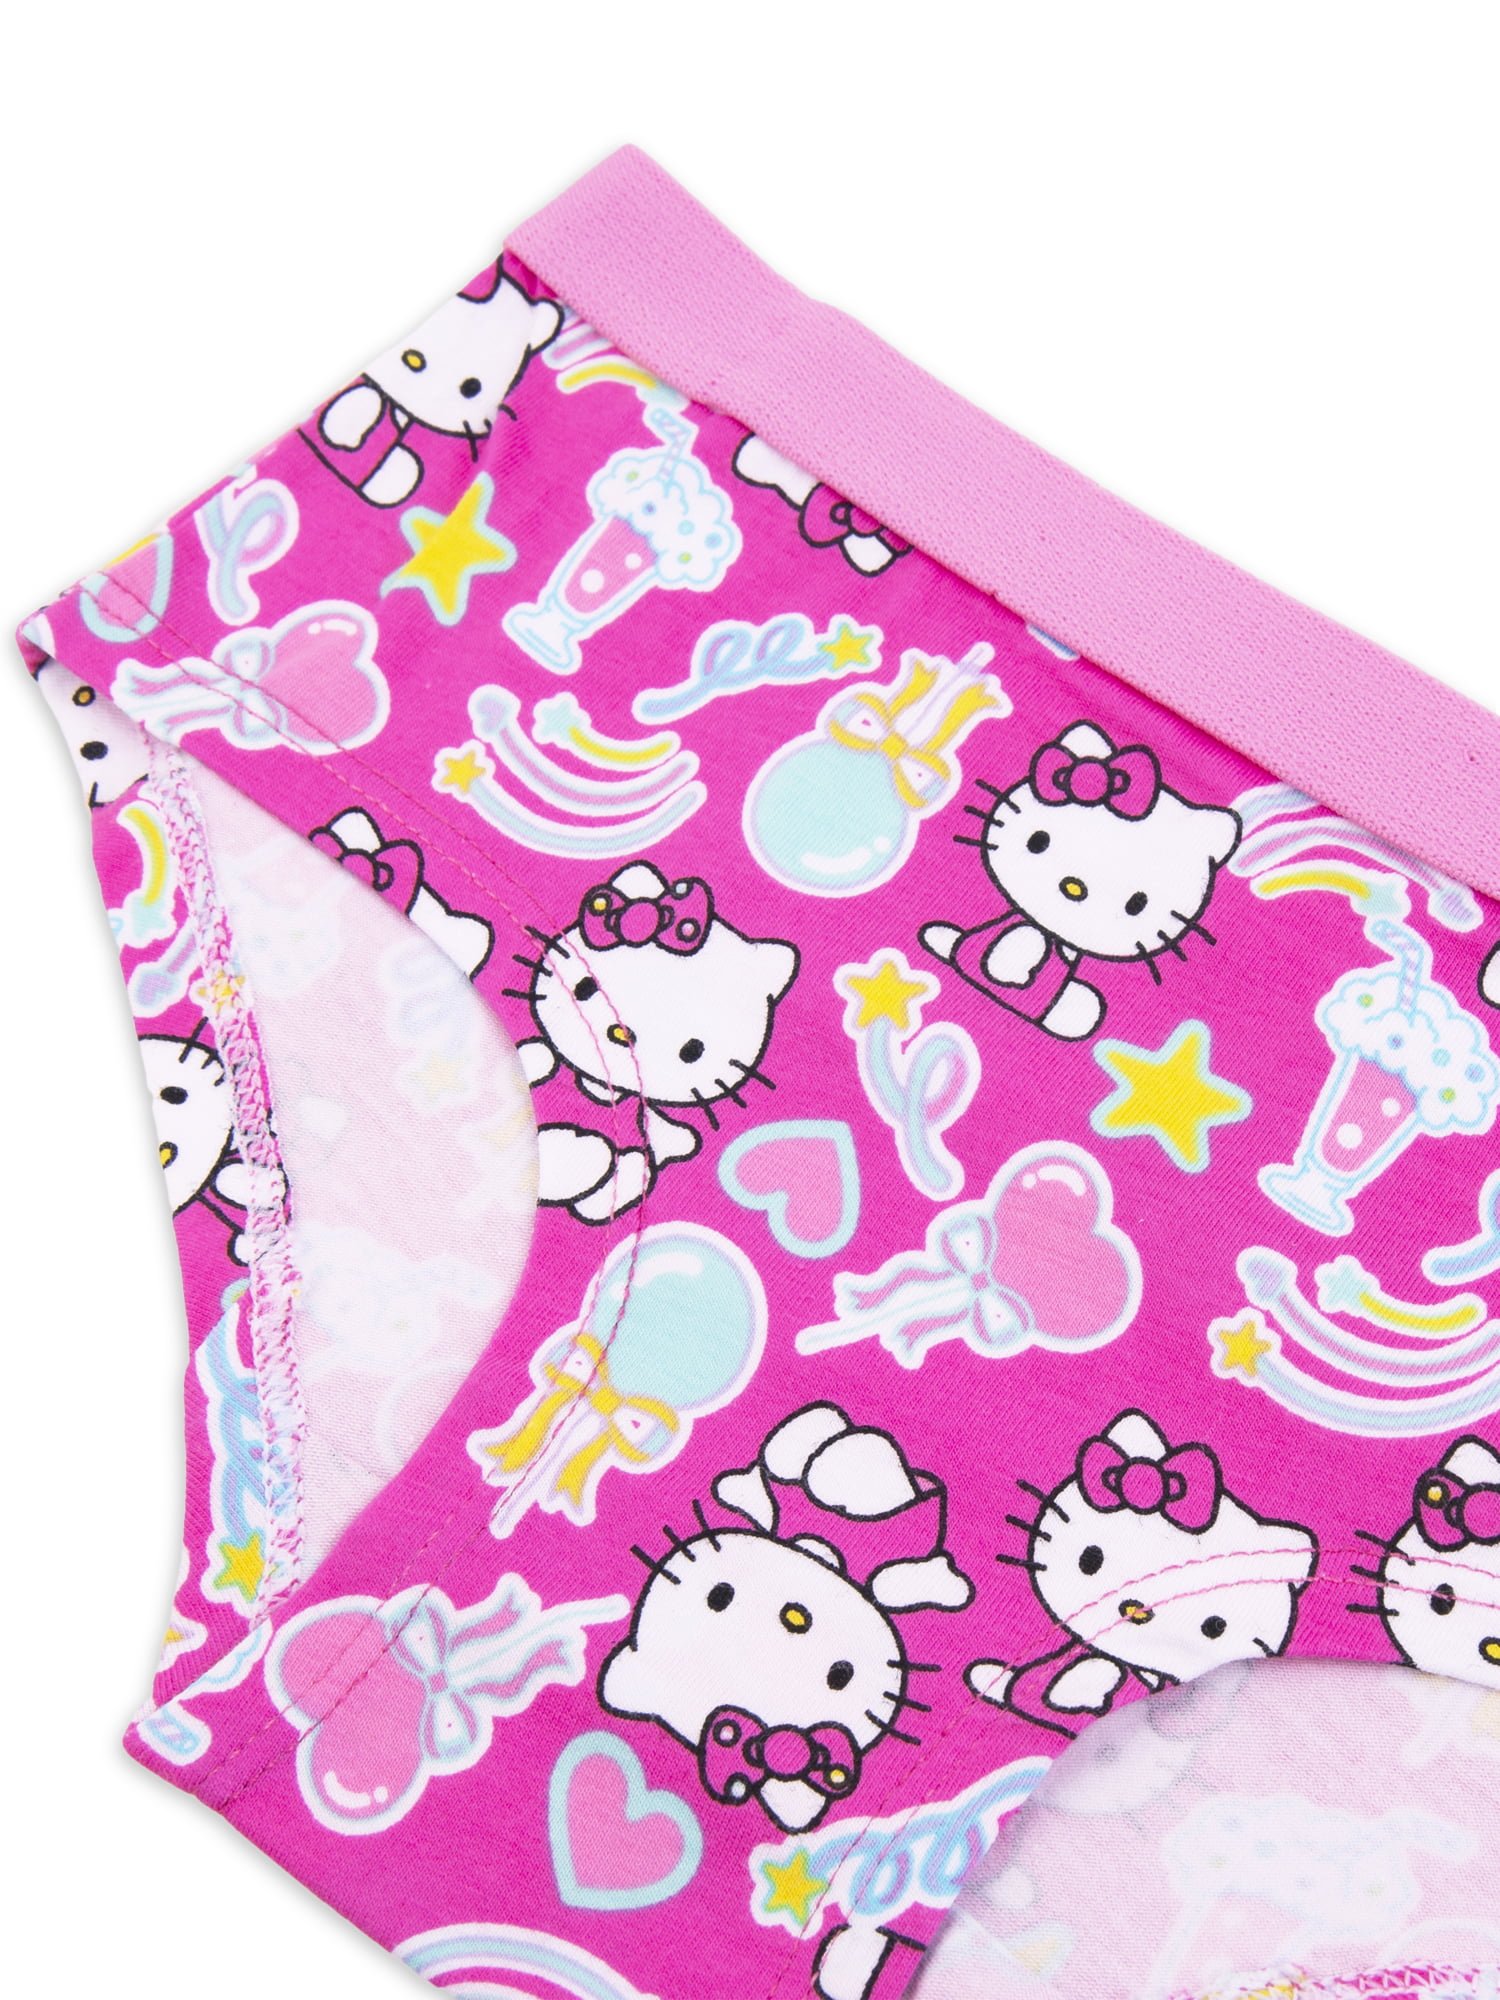 Hello Kitty Girls Stretch Hipster Briefs Underwear, 4-Pack Sizes 6-10